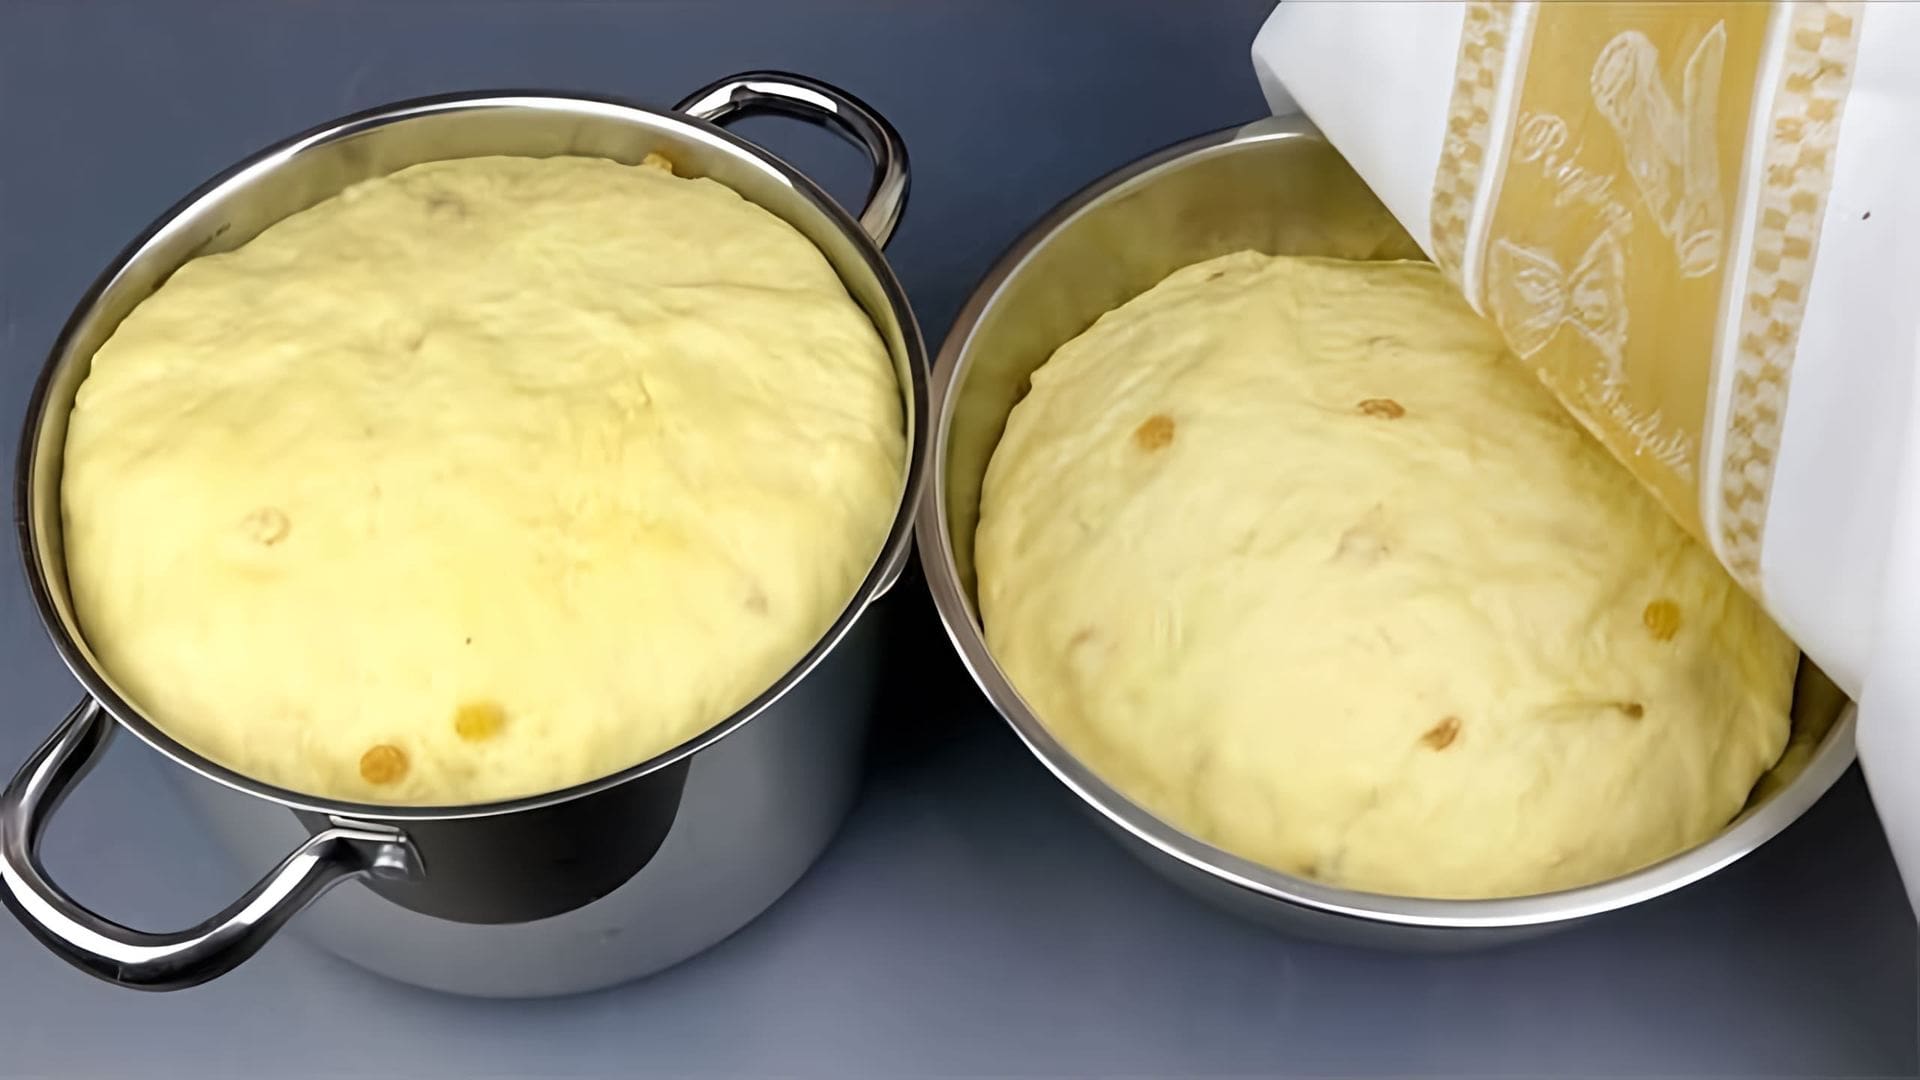 В этом видео автор делится тремя рецептами блюд, которые она готовит на Пасху: куличи, творожная пасха и глазурь